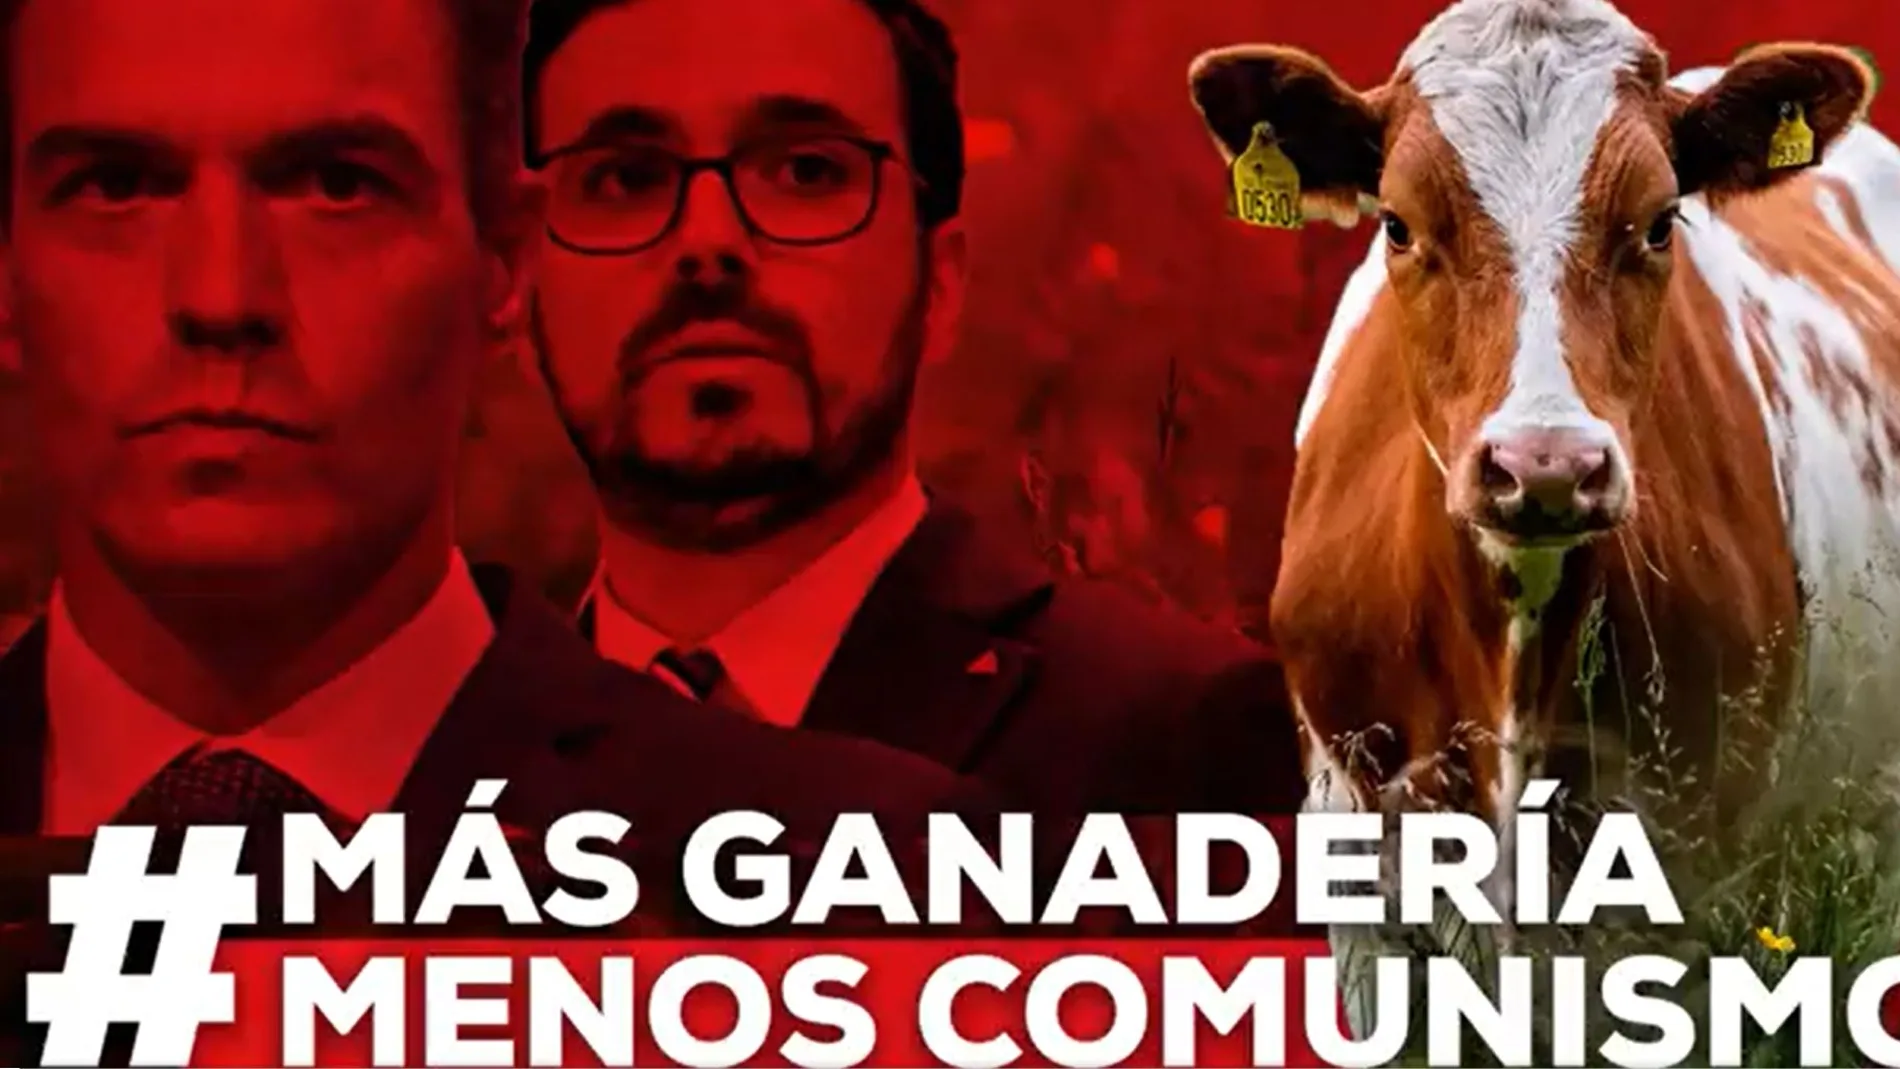 El Partido Popular lanza una campaña contra Alberto Garzón bajo el lema "más ganadería, menos comunismo"